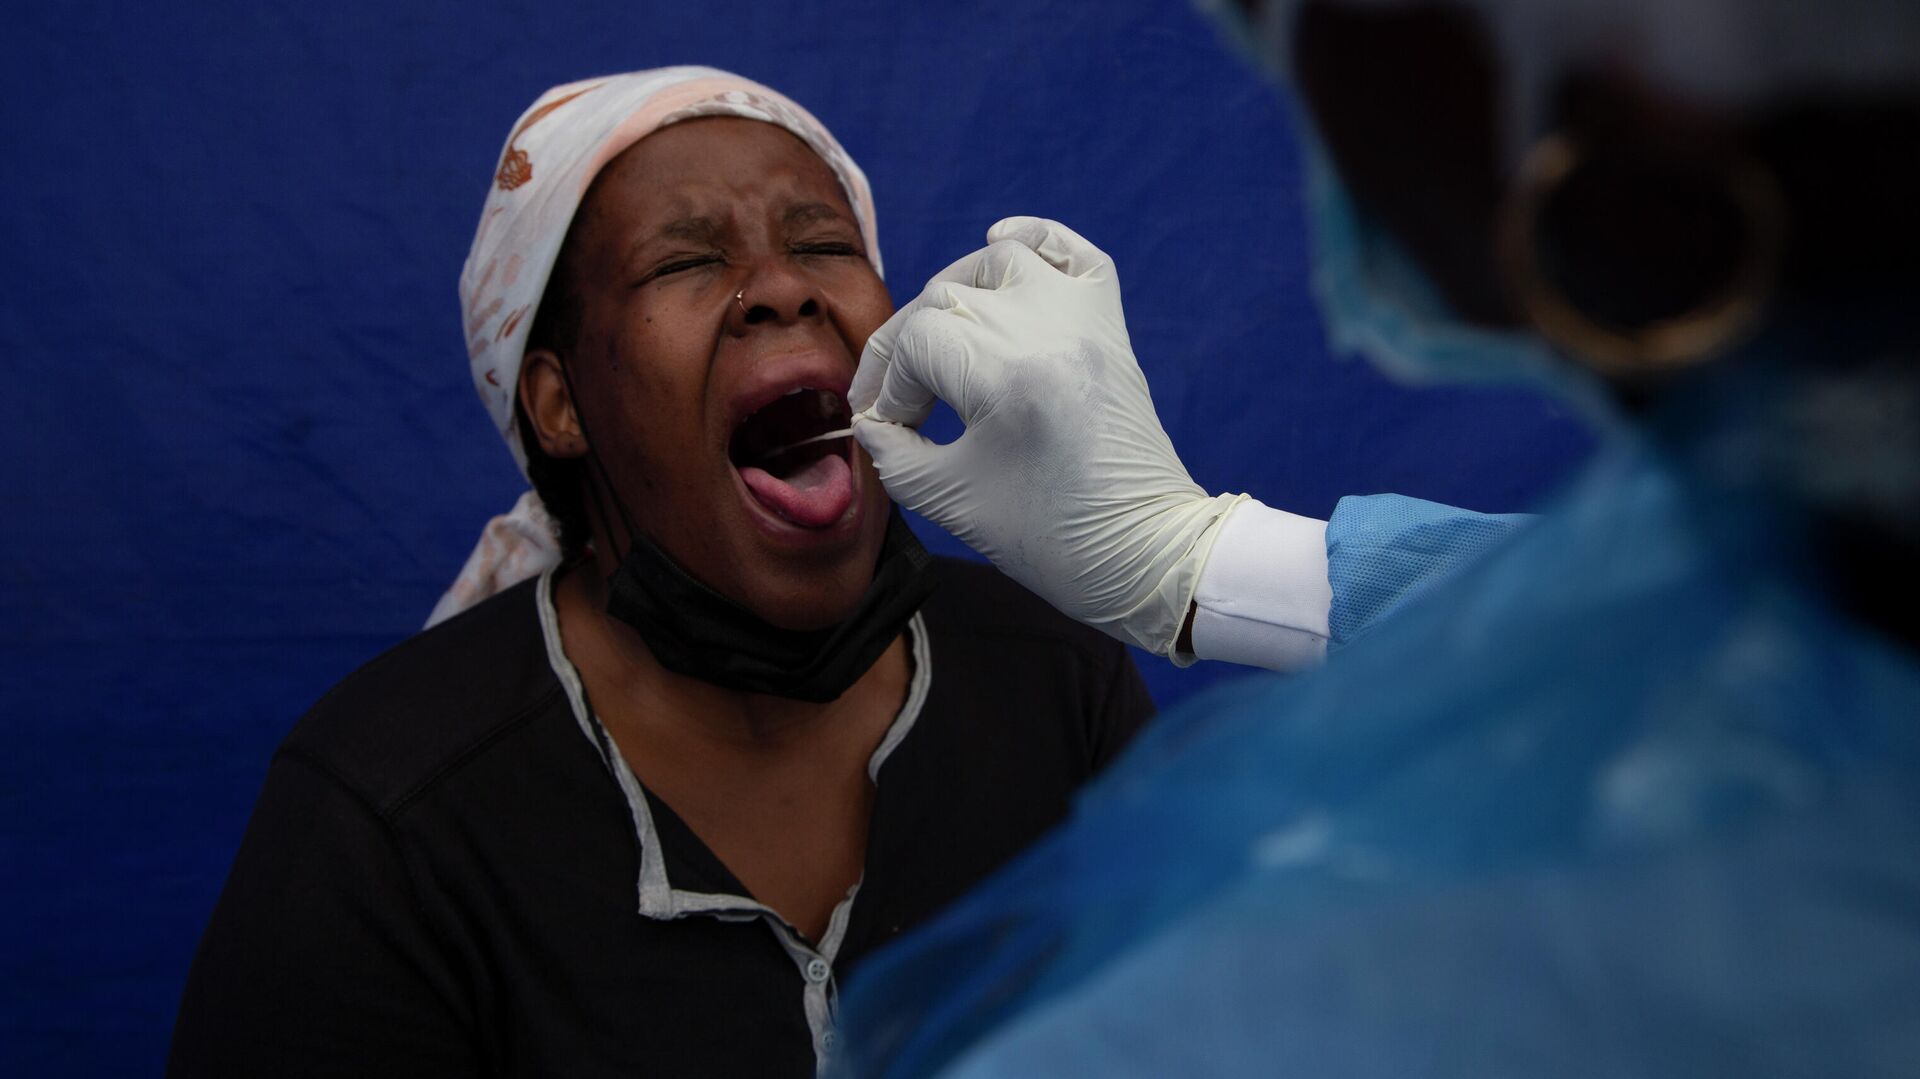 У пациента взят мазок из горла для проверки на COVID-19 в Соуэто, Южная Африка - РИА Новости, 1920, 03.12.2021